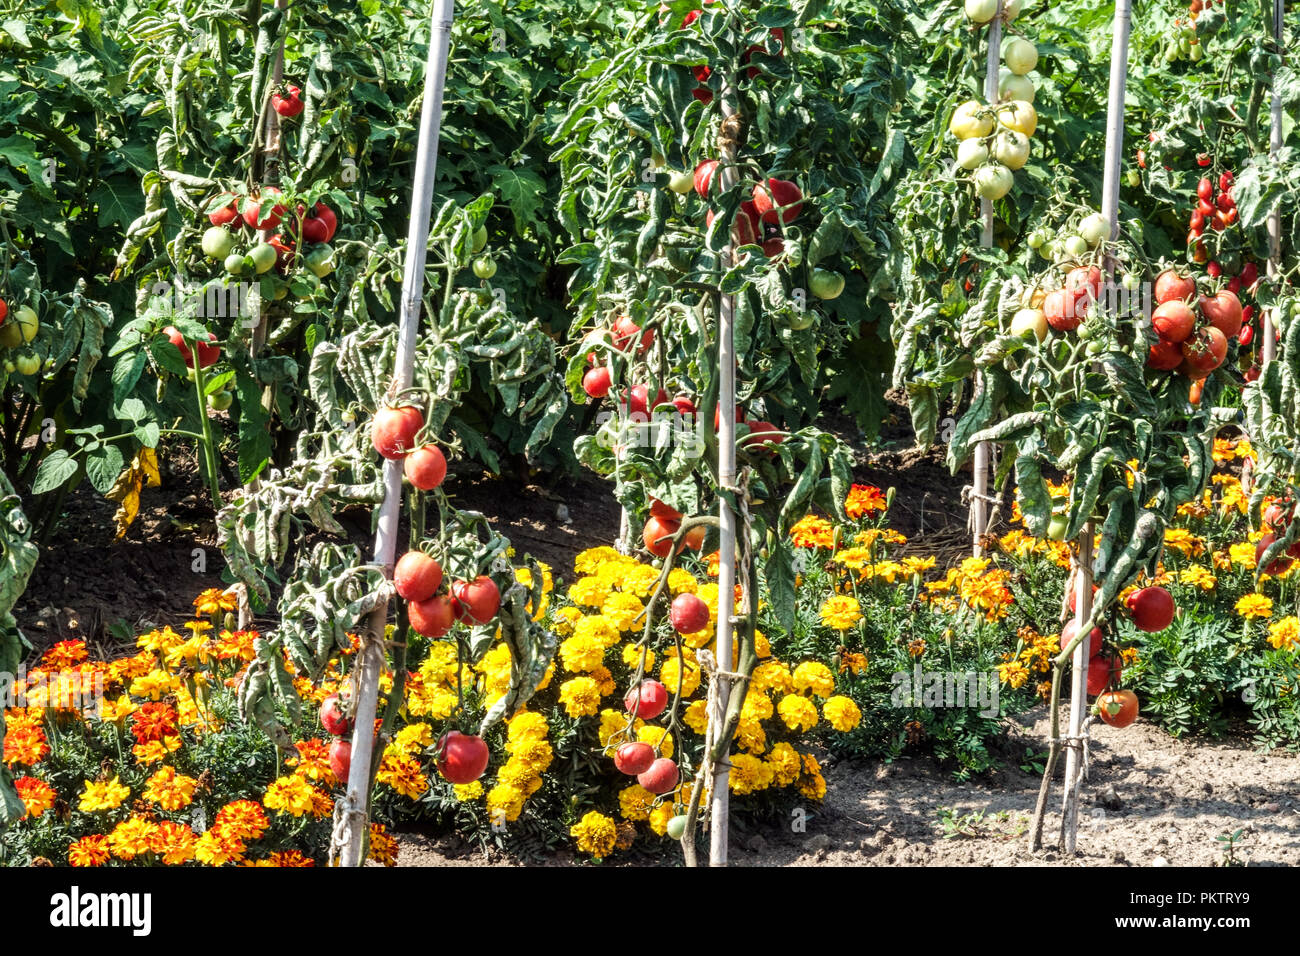 Tomaten Marigolds Französische Marigolds Tomaten Garten gemischte Pflanzen wachsen zusammen Gemüsegartenreihen Solanum beugt der Weißen Fliege Schädlingsabwehrpflanzen vor Stockfoto